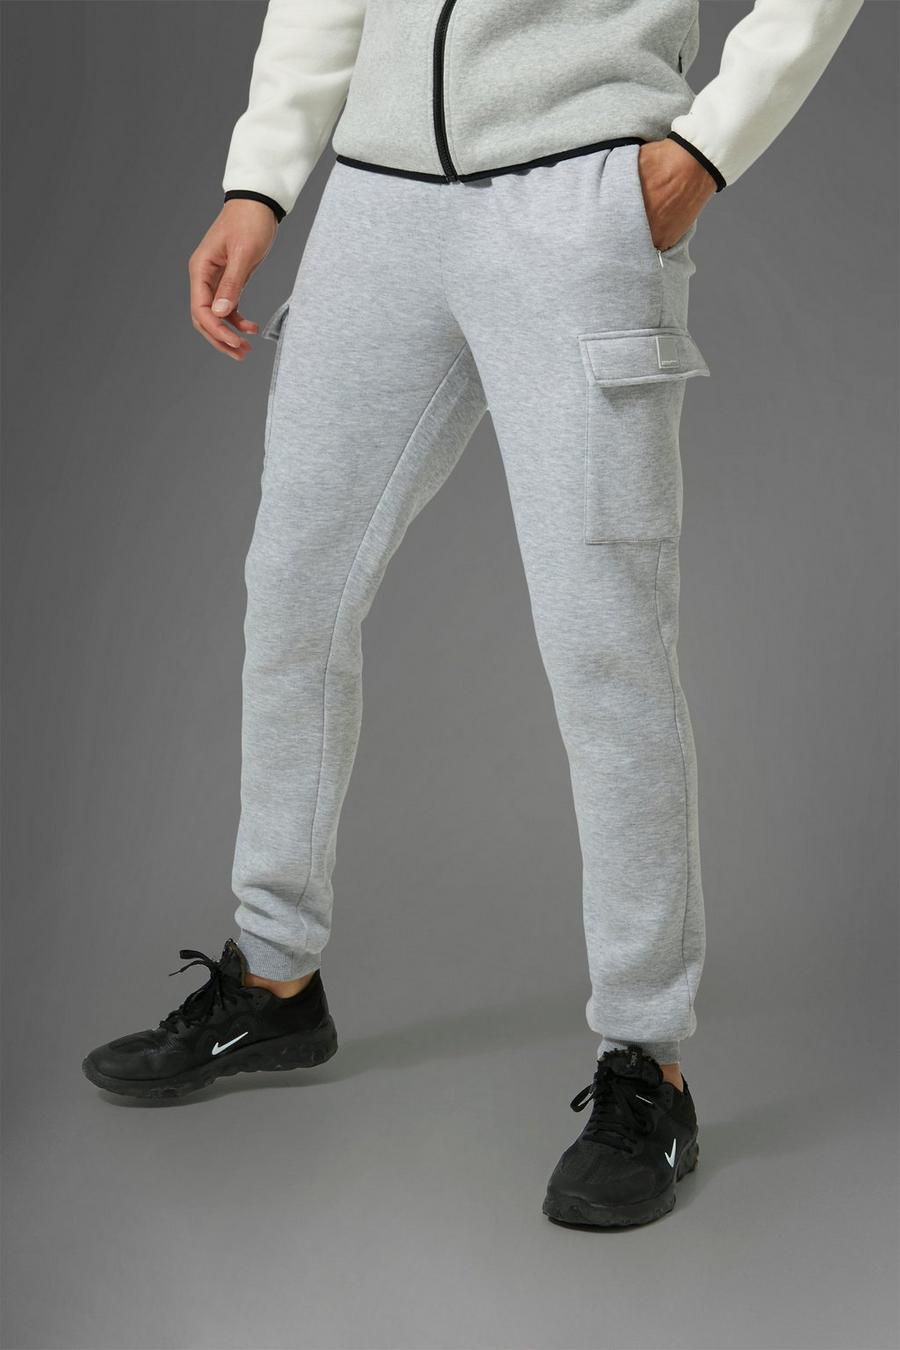 סלע אפור gris מכנסי ריצה ספורטיביים בסגנון דגמ'ח לחדר הכושר Man, לגברים גבוהים